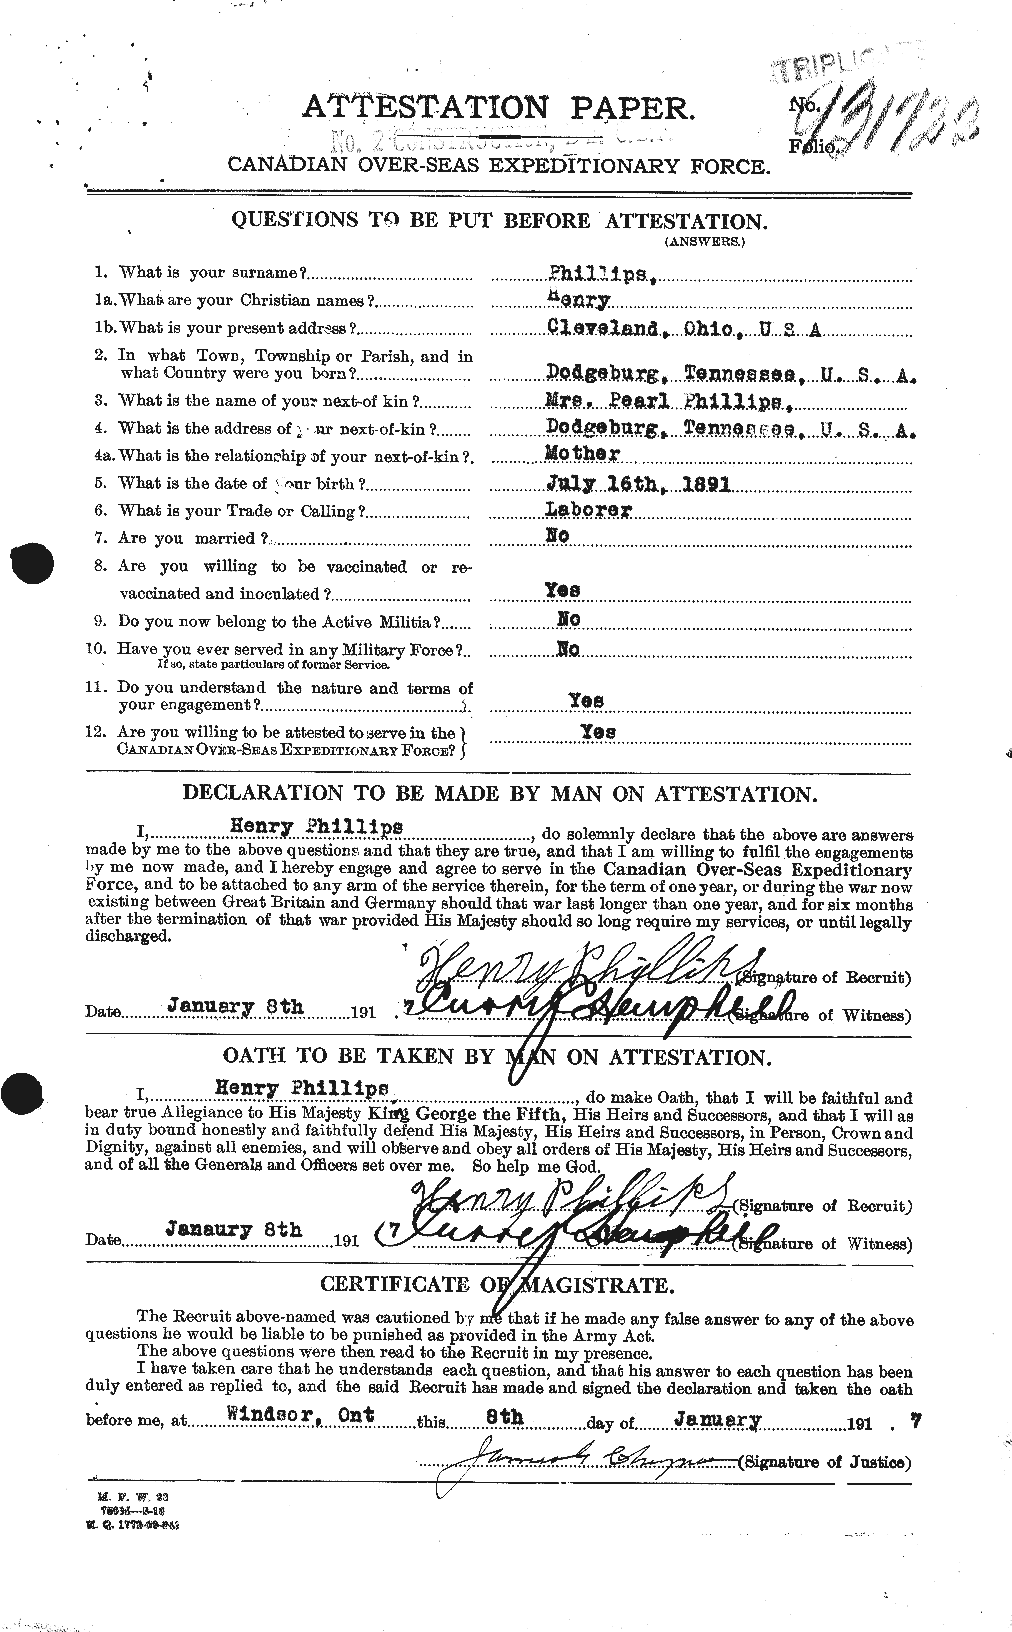 Dossiers du Personnel de la Première Guerre mondiale - CEC 577599a